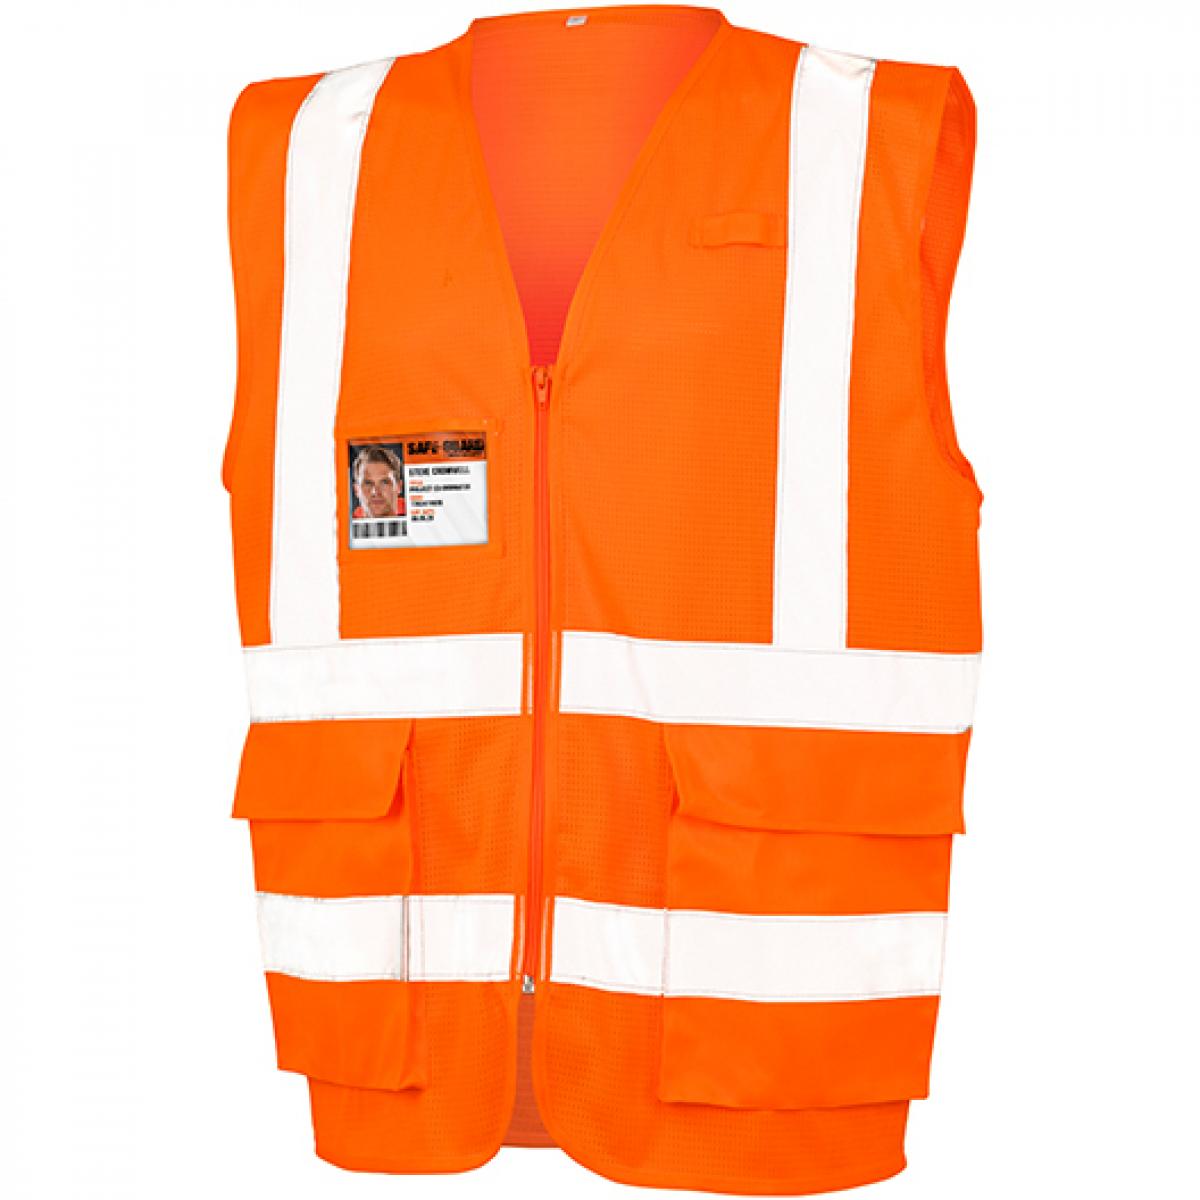 Hersteller: Safe-Guard Herstellernummer: R479X Artikelbezeichnung: Executive Cool Mesh Safety Vest - Sicherheitsweste Farbe: Fluorescent Orange